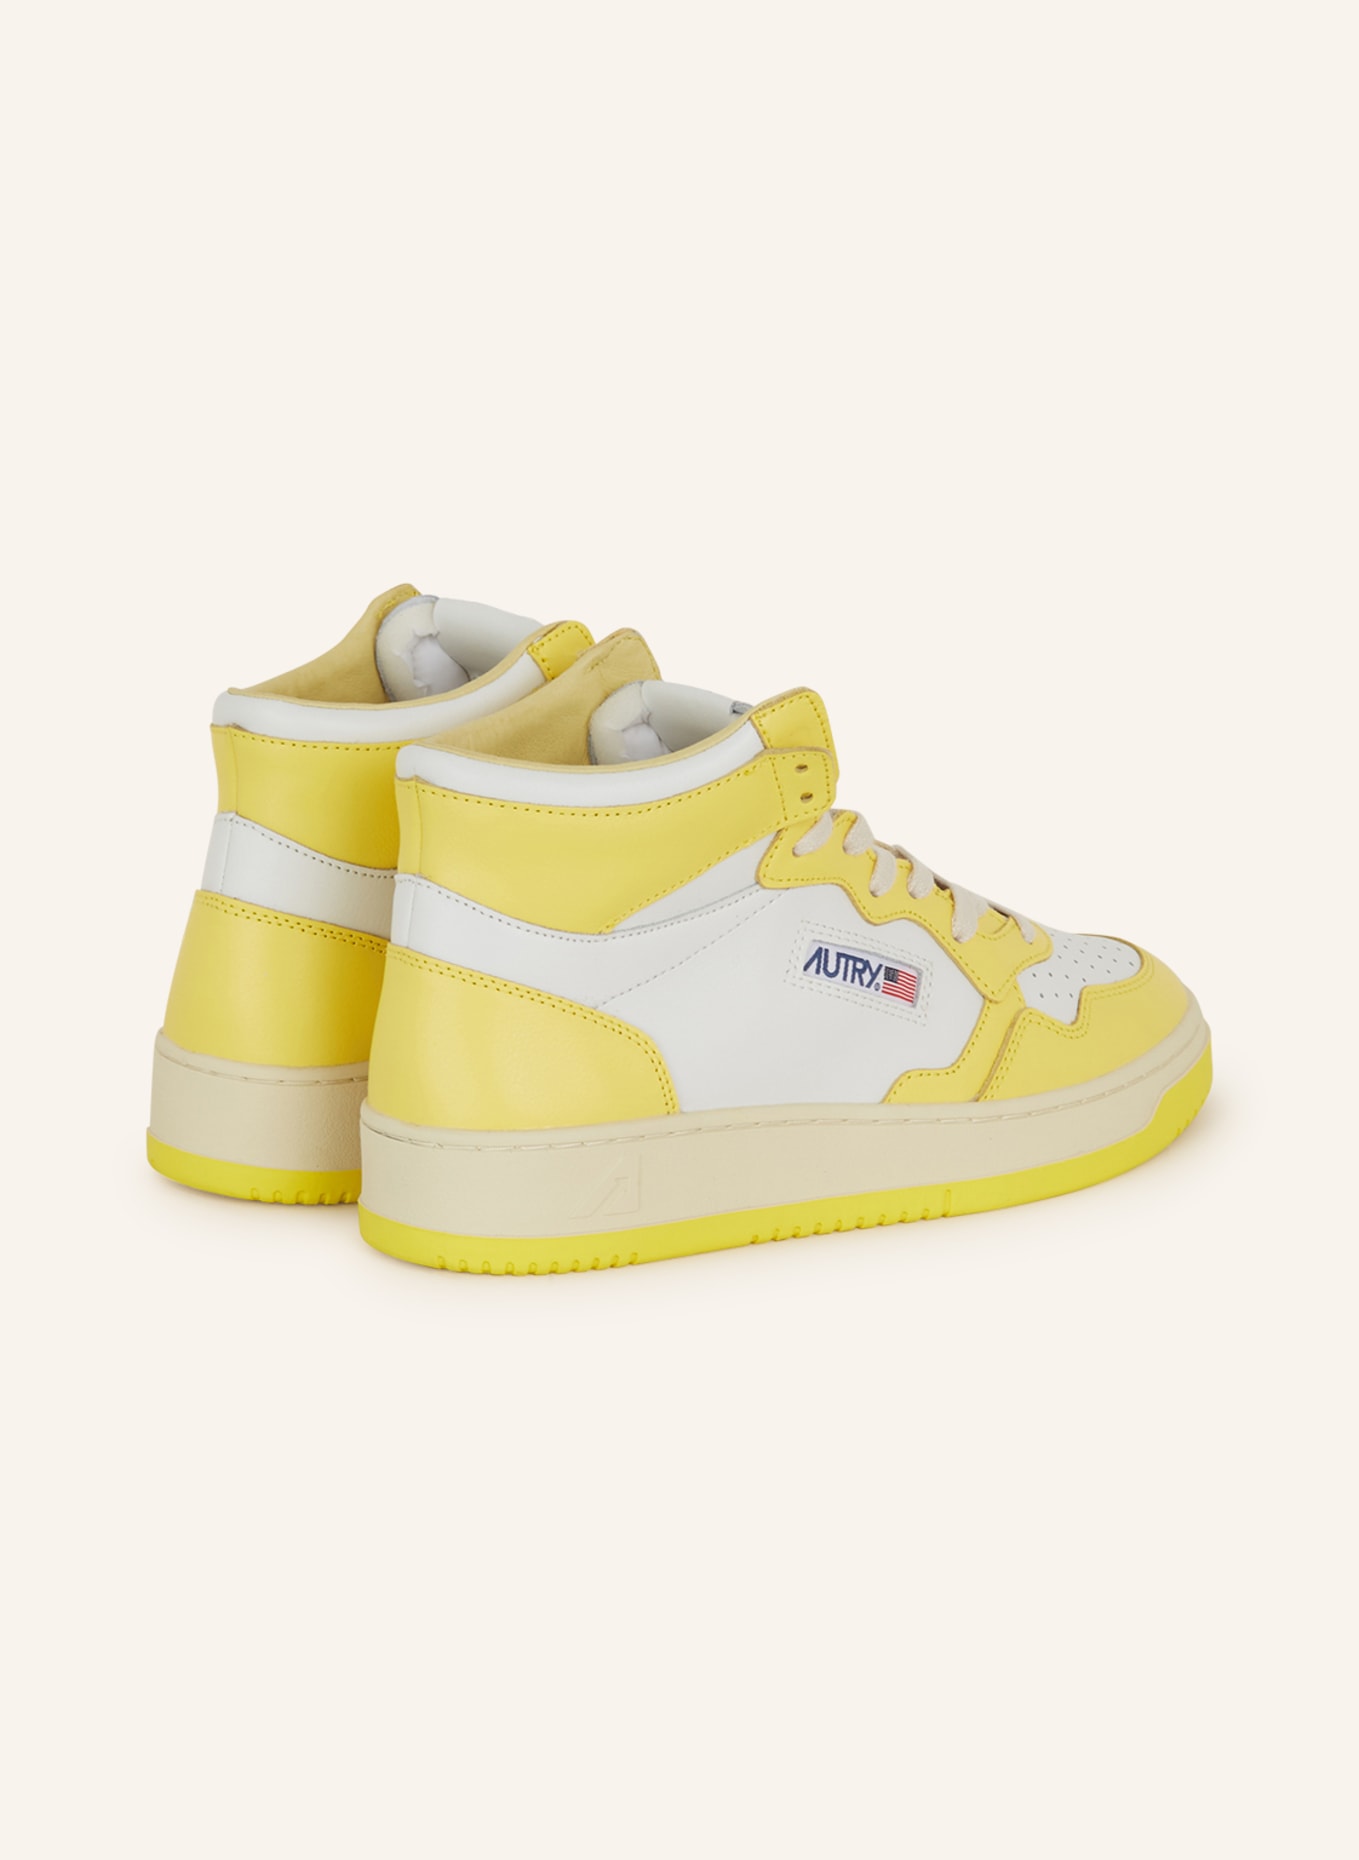 AUTRY Hightop-Sneaker MEDALIST, Farbe: GELB/ WEISS (Bild 2)